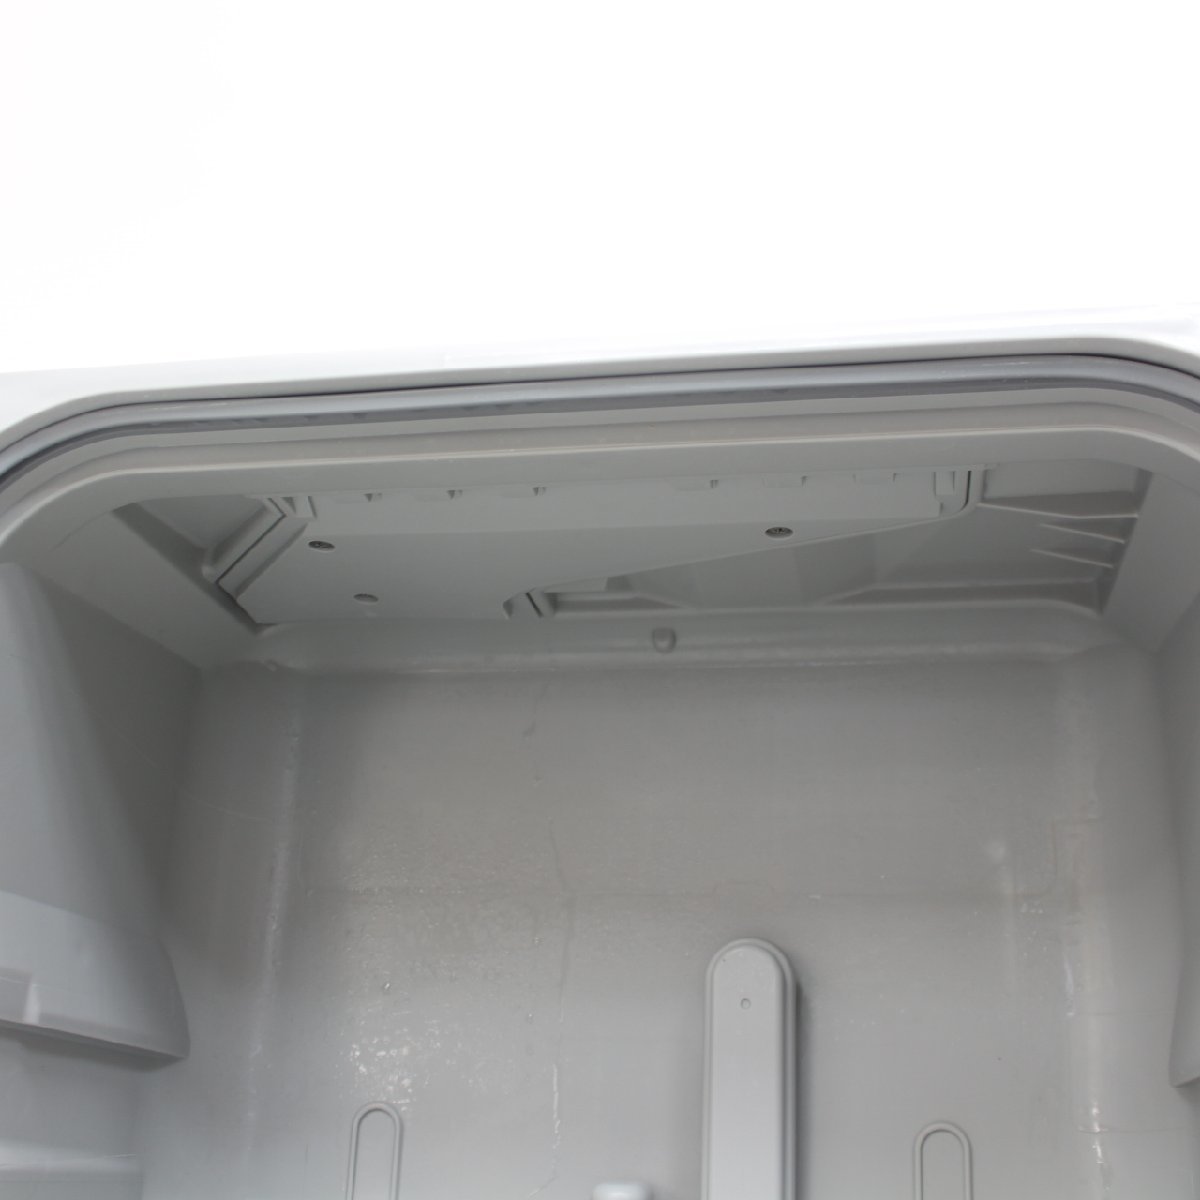 314)パナソニック 食器洗い乾燥機 NP-TCR4-W 2022年製 食器点数18点